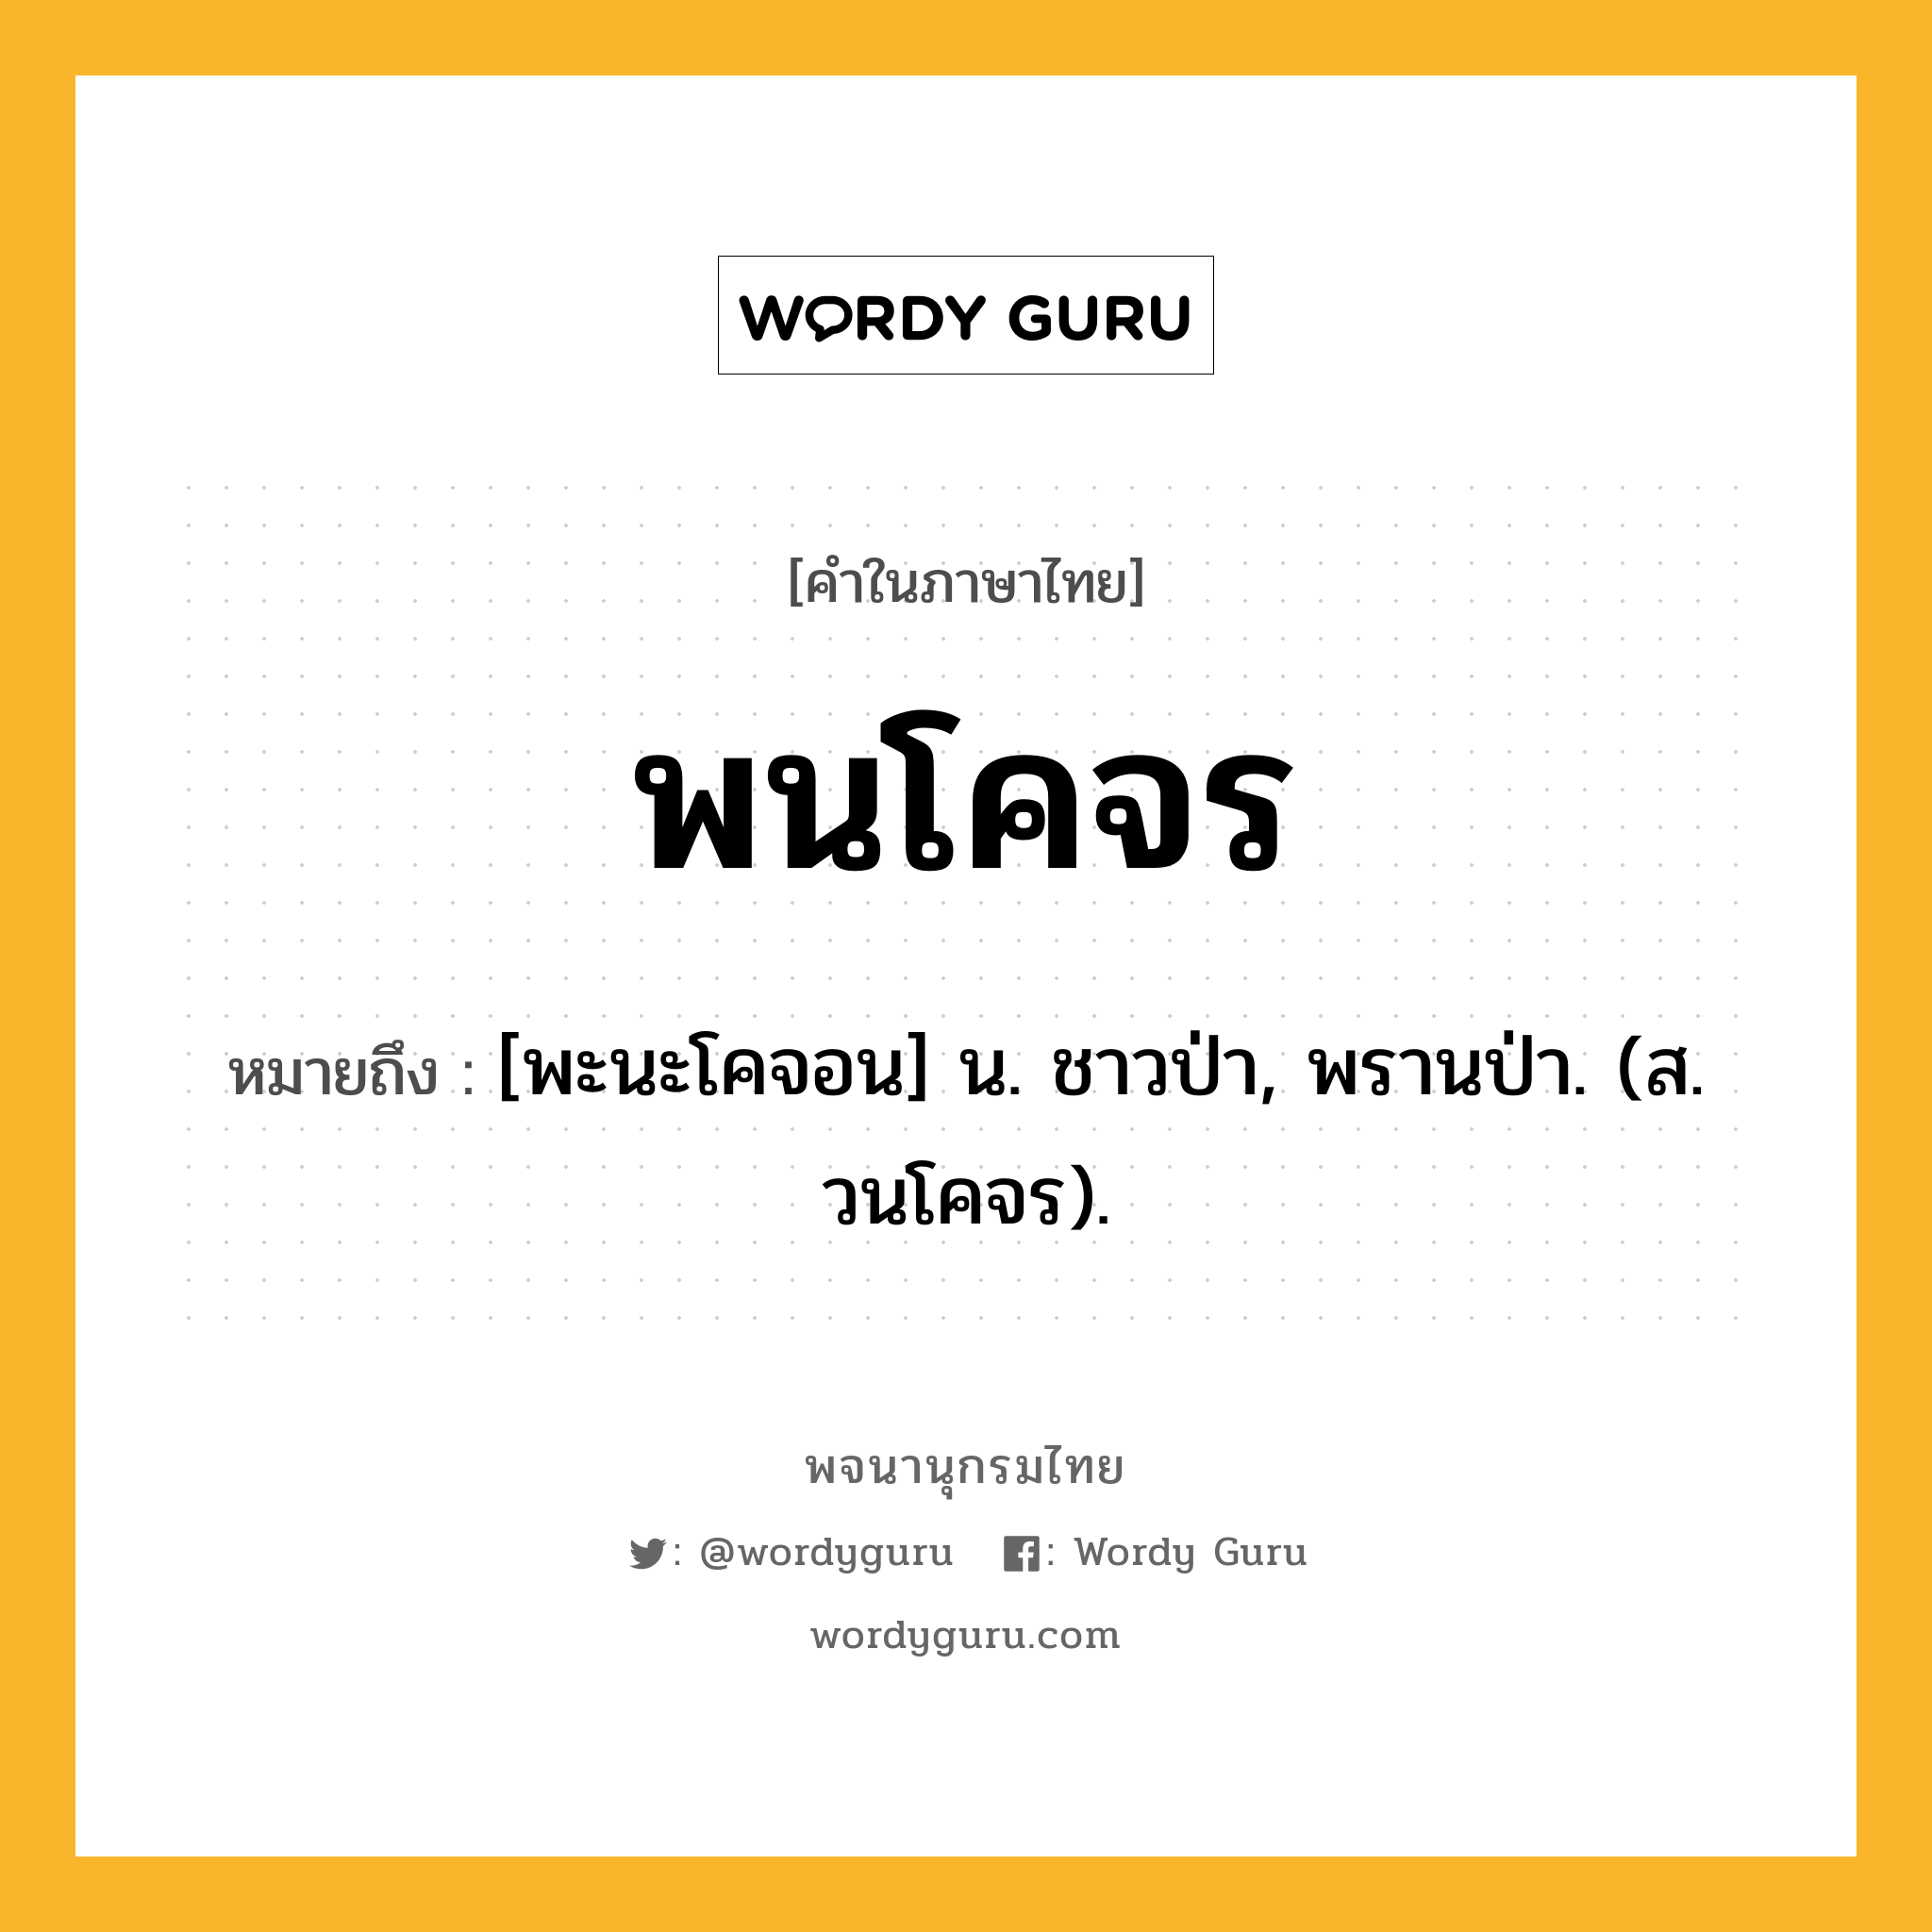 พนโคจร ความหมาย หมายถึงอะไร?, คำในภาษาไทย พนโคจร หมายถึง [พะนะโคจอน] น. ชาวป่า, พรานป่า. (ส. วนโคจร).